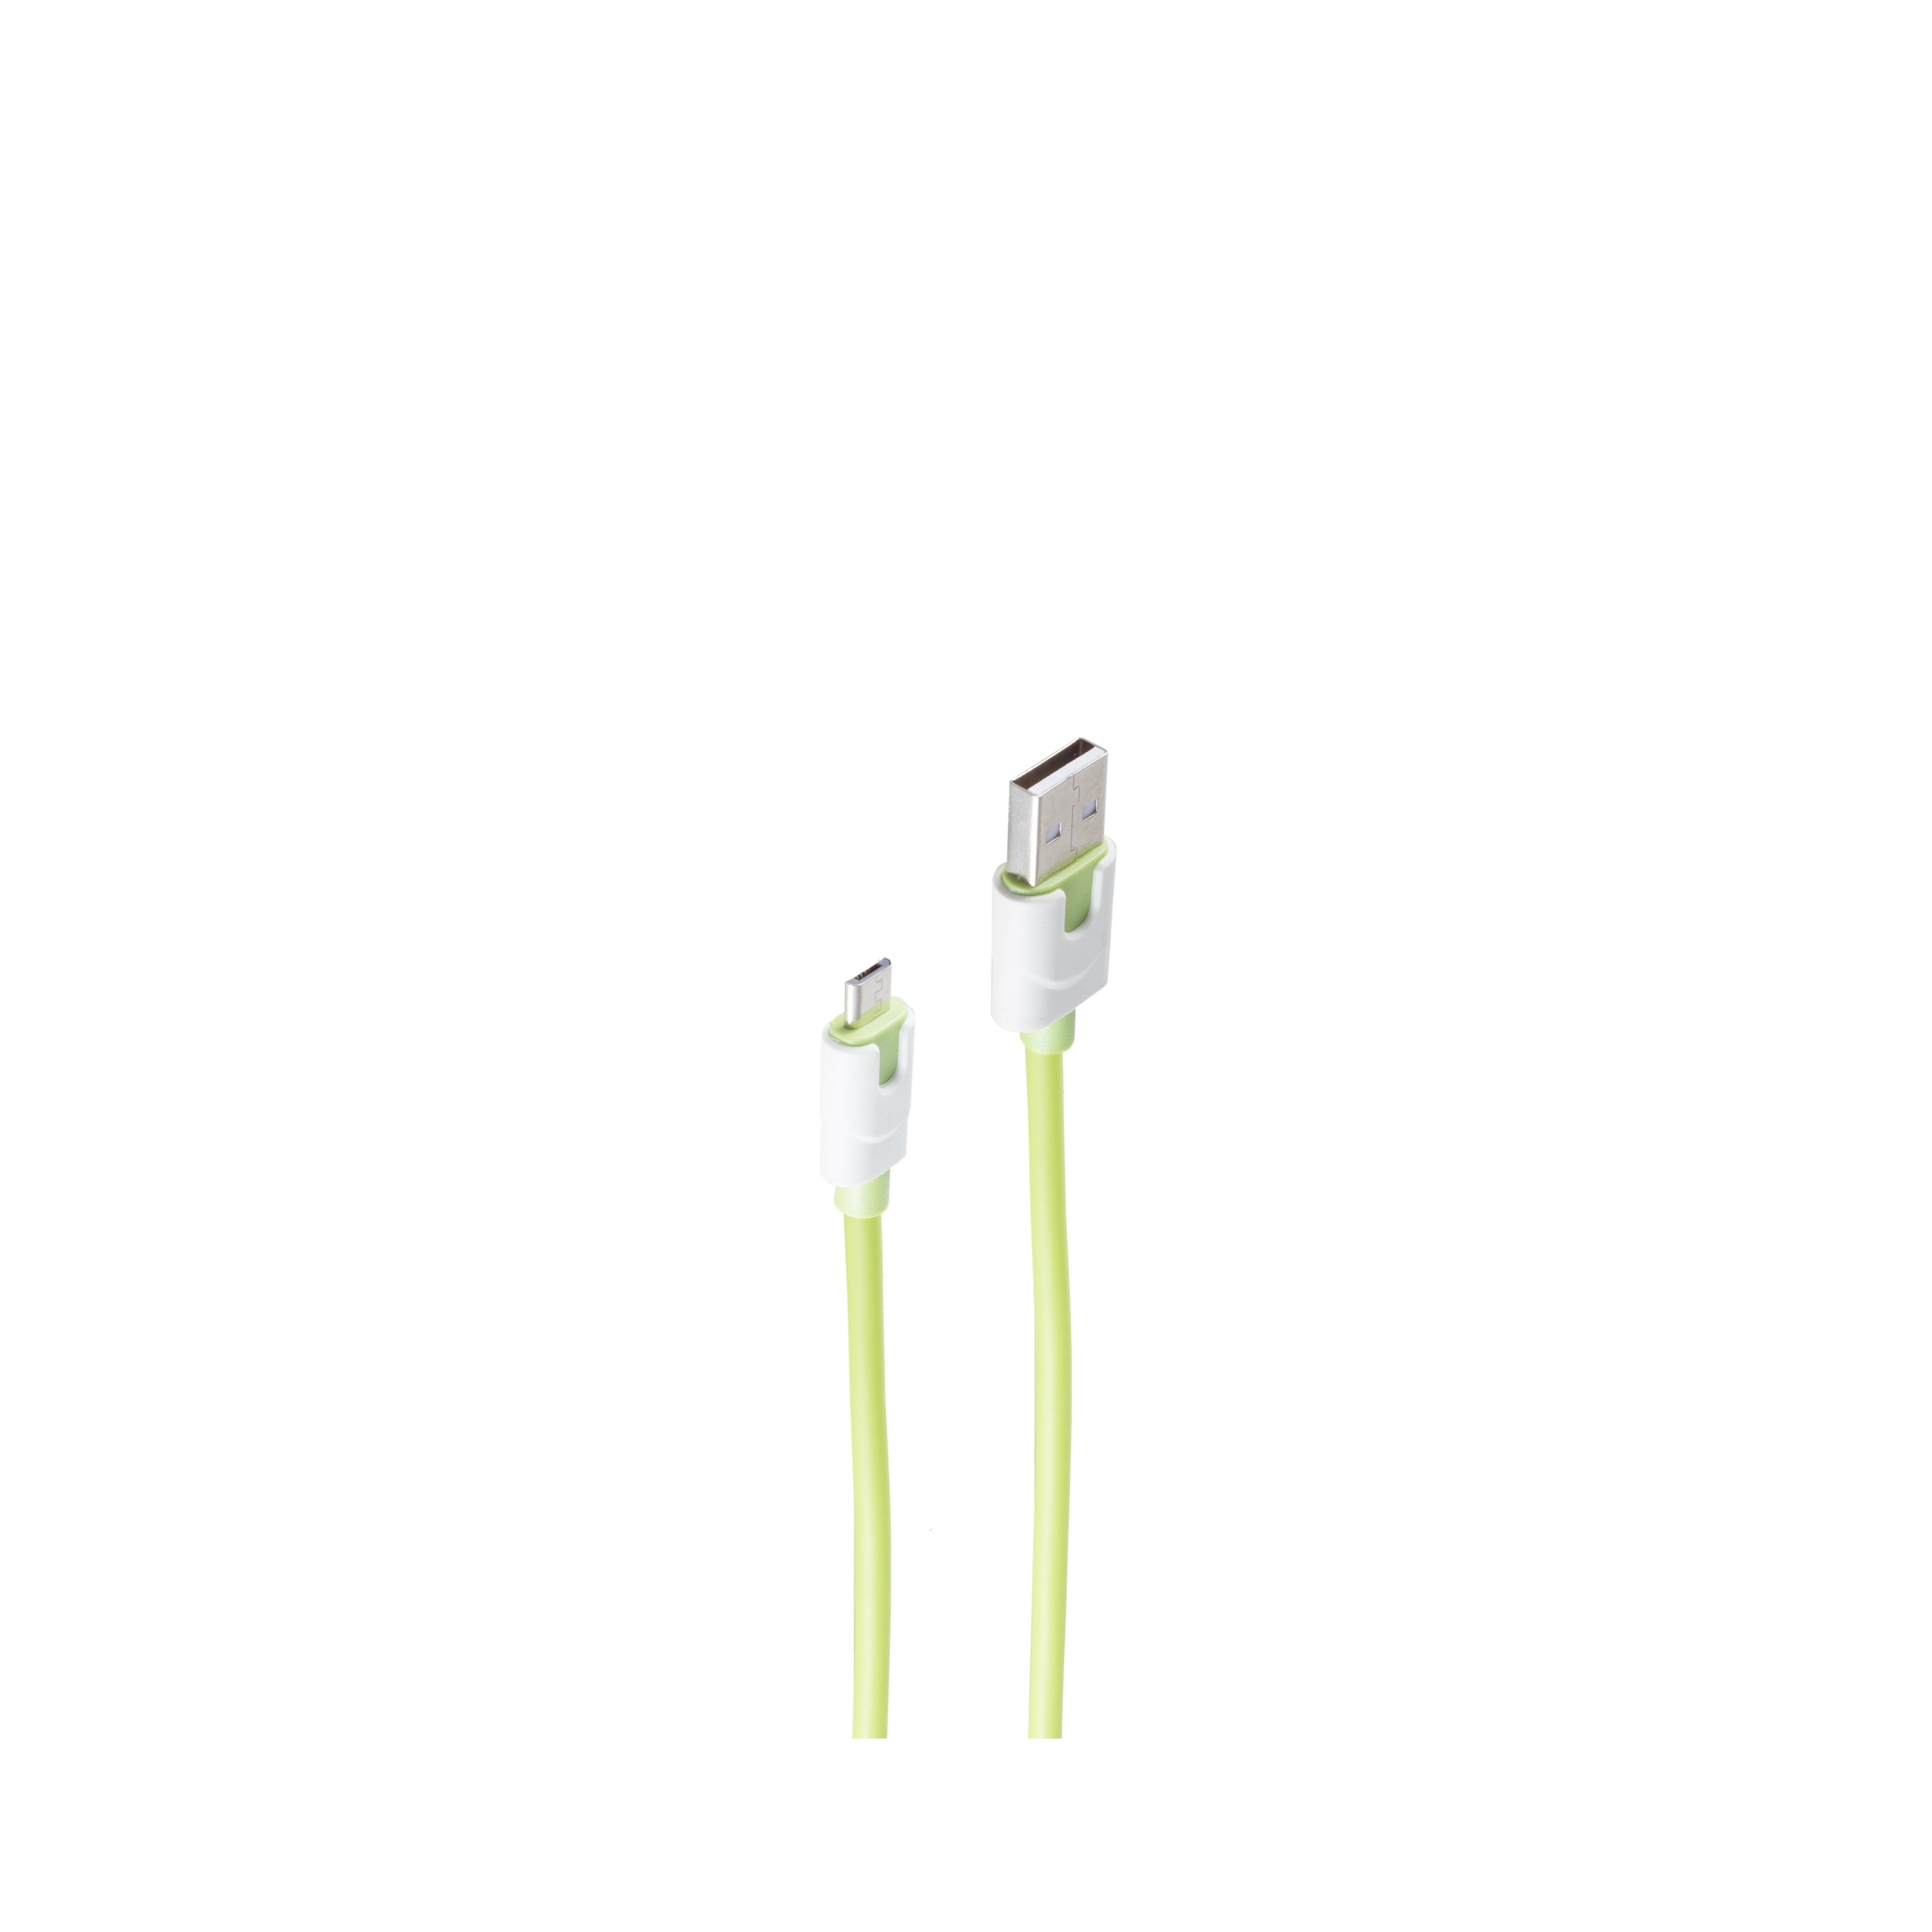 2m, USB Ladekabel, grün, grün m, USB 2 Stecker USB-Ladekabel SHIVERPEAKS B, Micro auf A